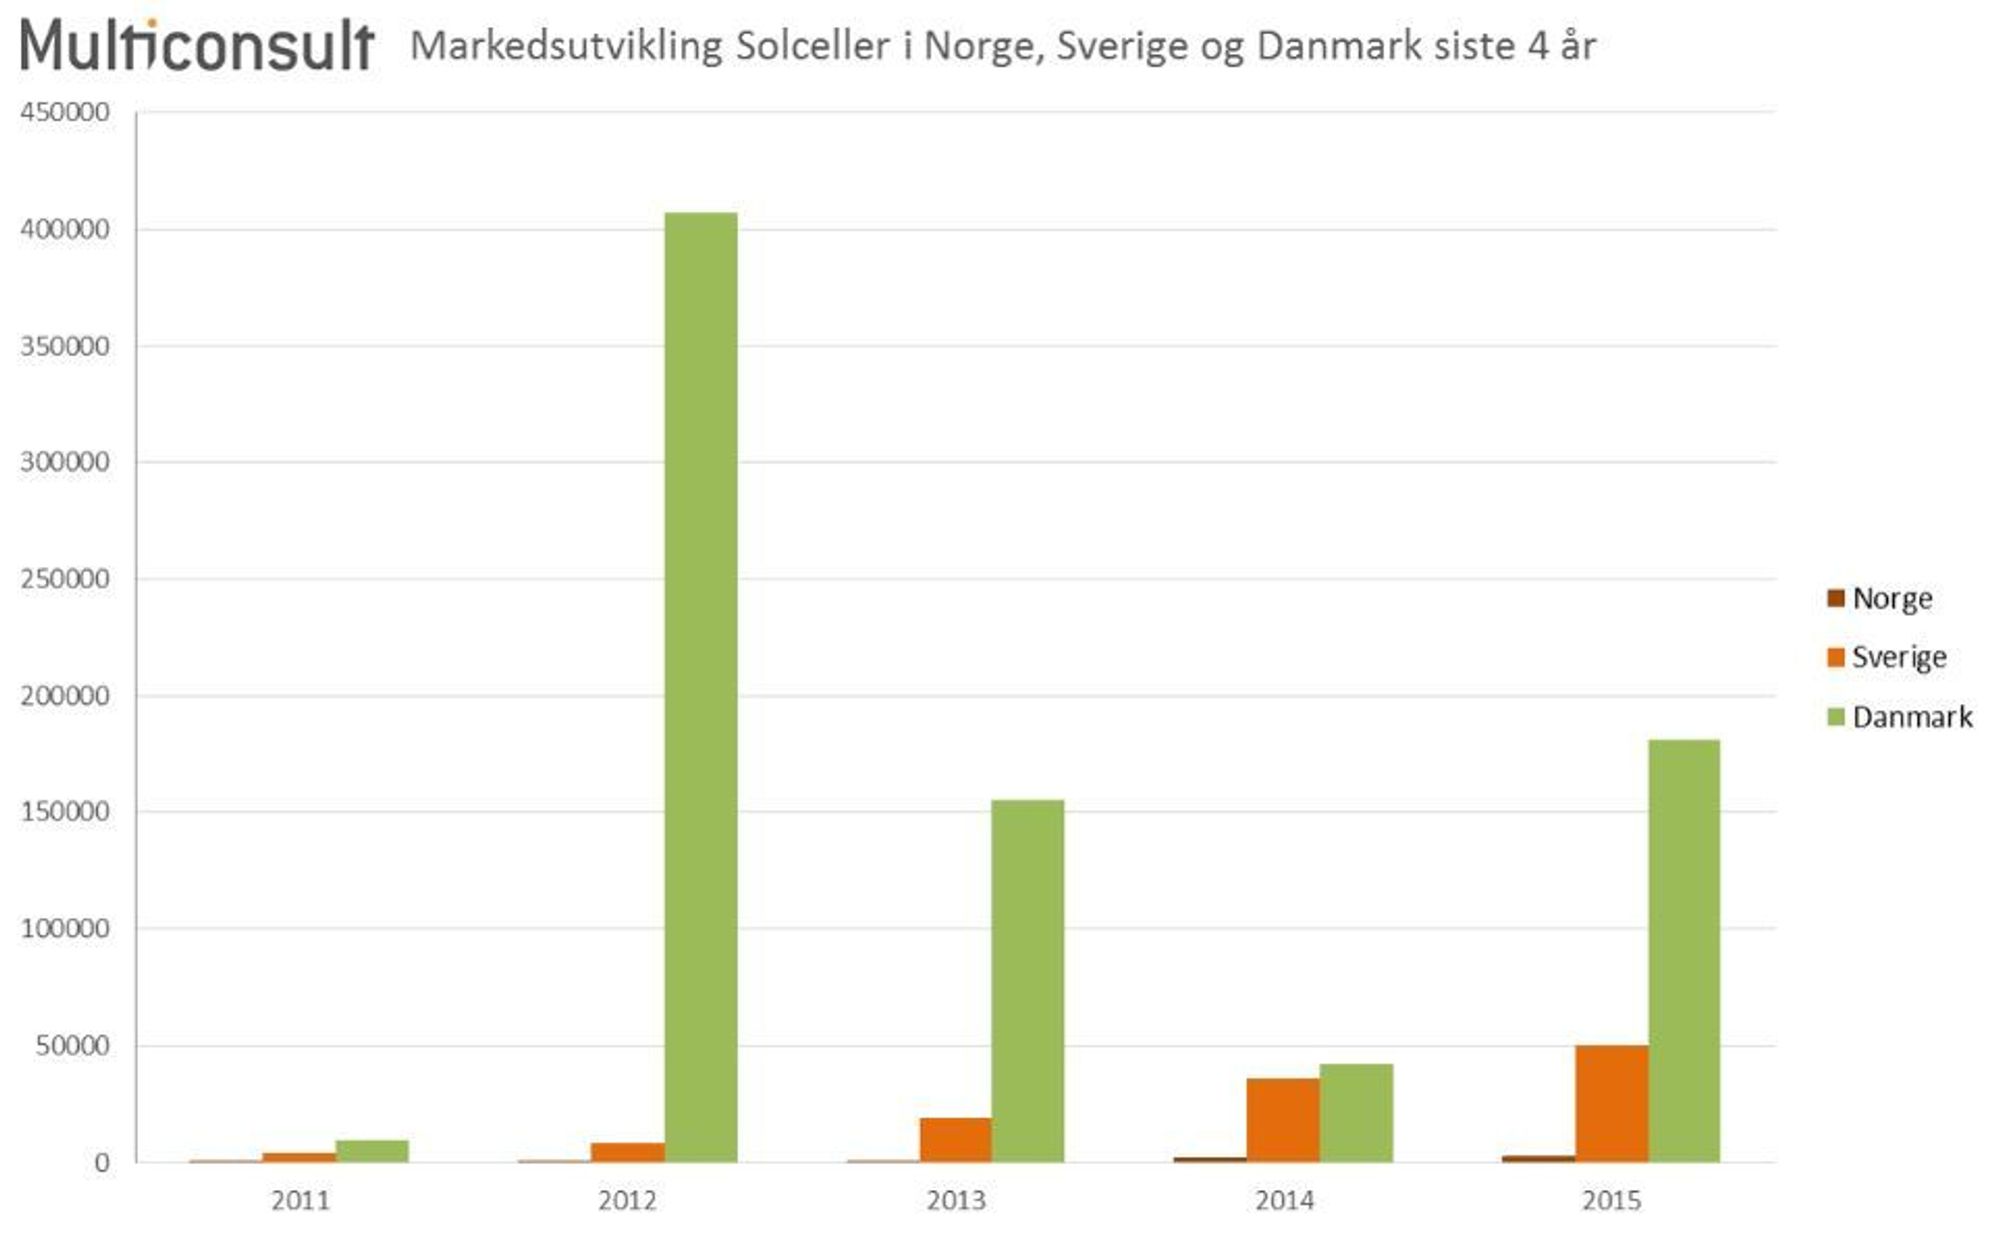 Lilleputt: Selv om utviklingen av solkraft ser ut til å bli eksplosiv i Norge i 2016, er omfanget svært beskjedent sammenlignet med utbredelsen av solkraft i Danmark og Sverige. 